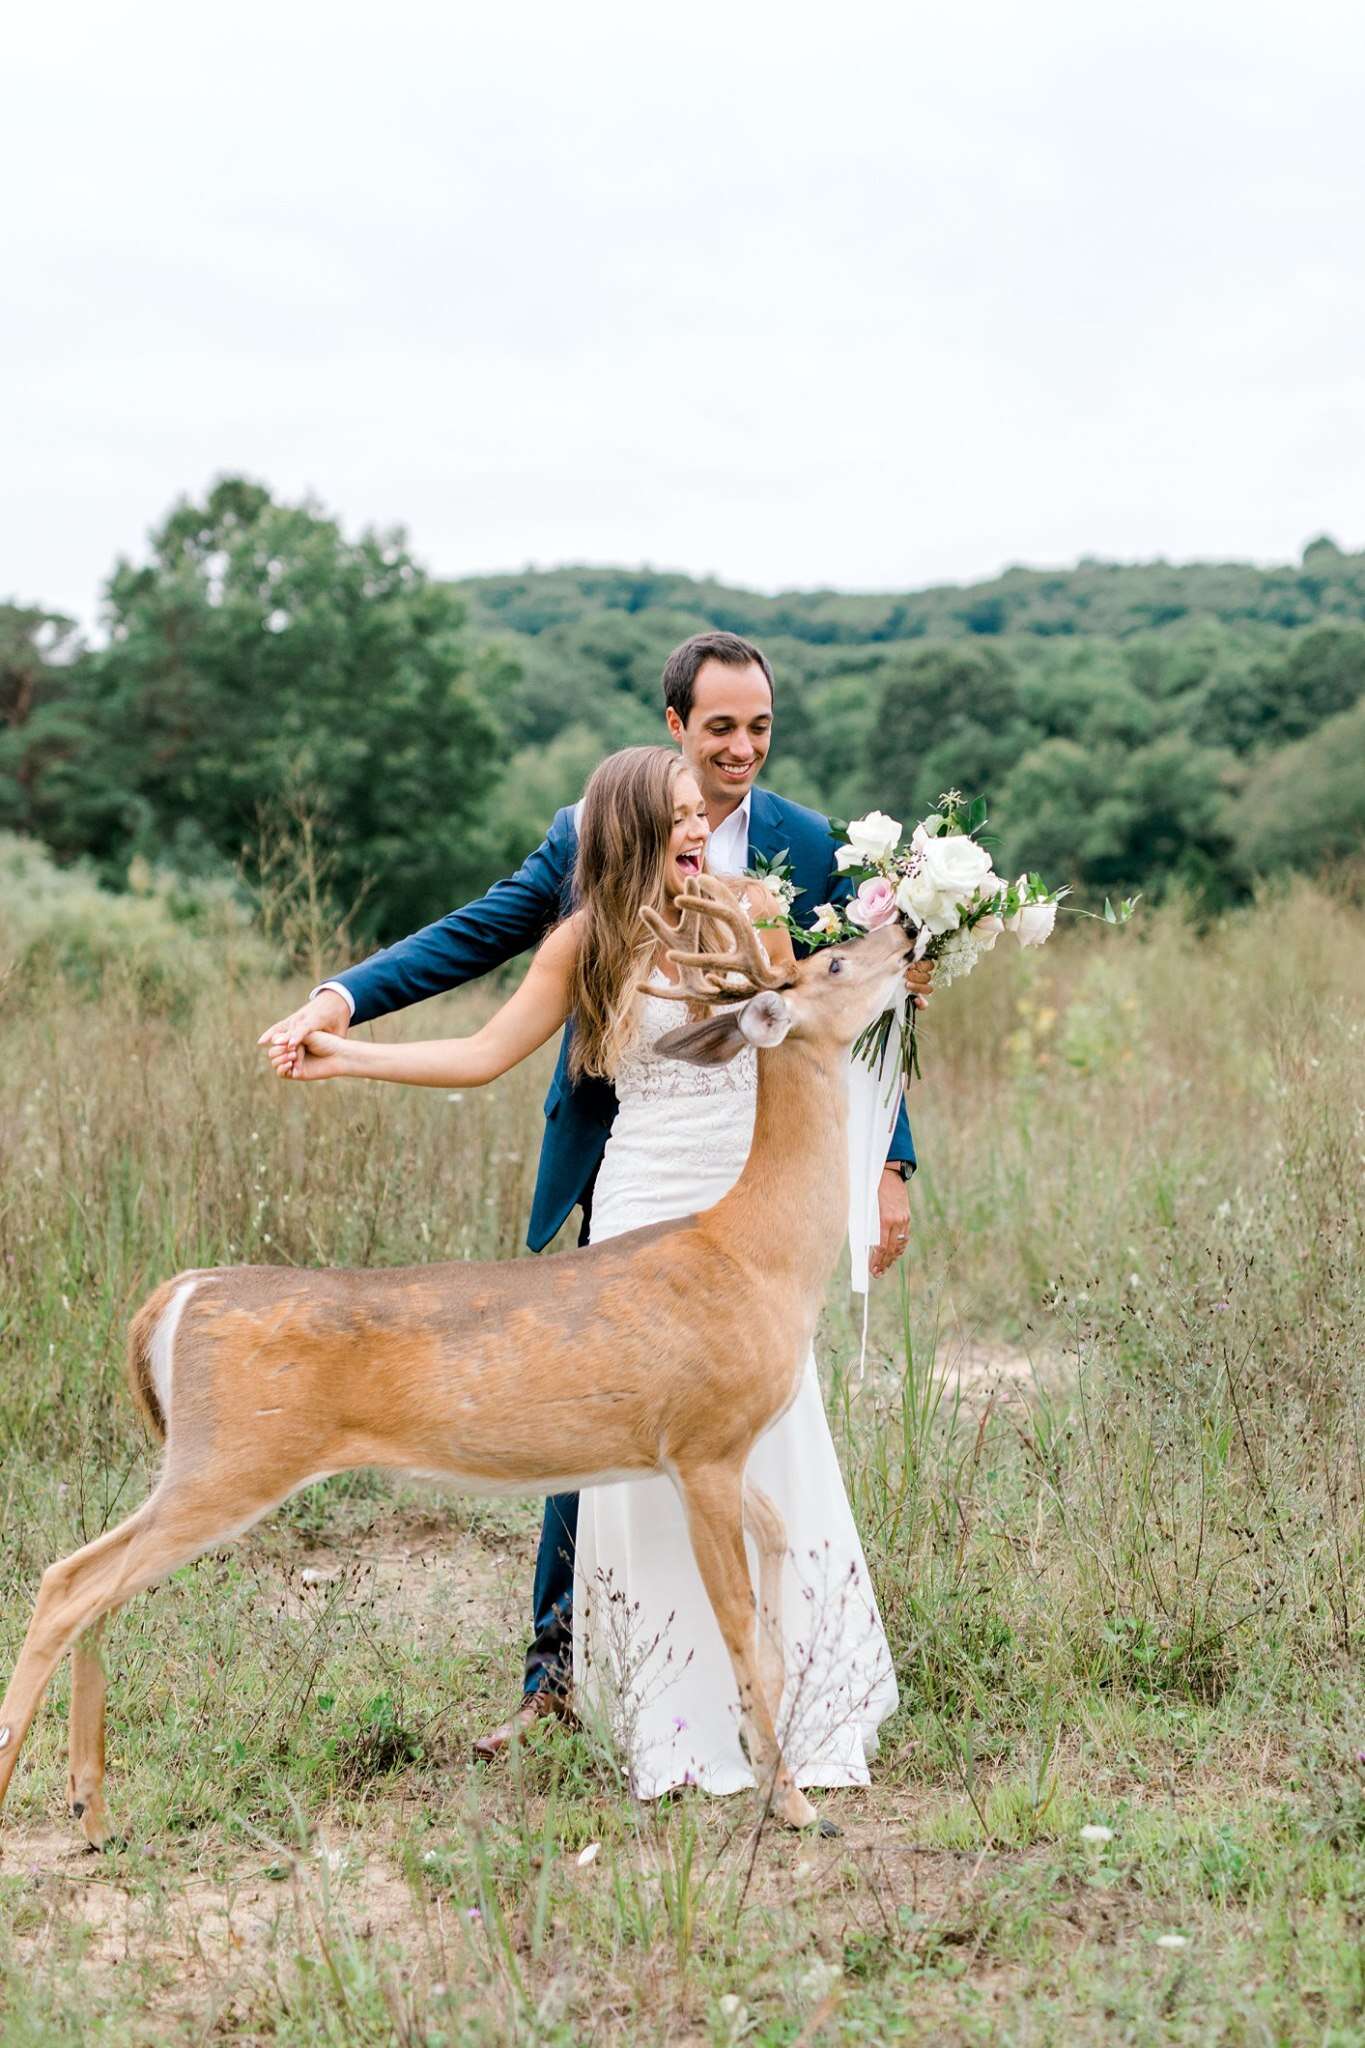 Wild deer eats bride's bouquet